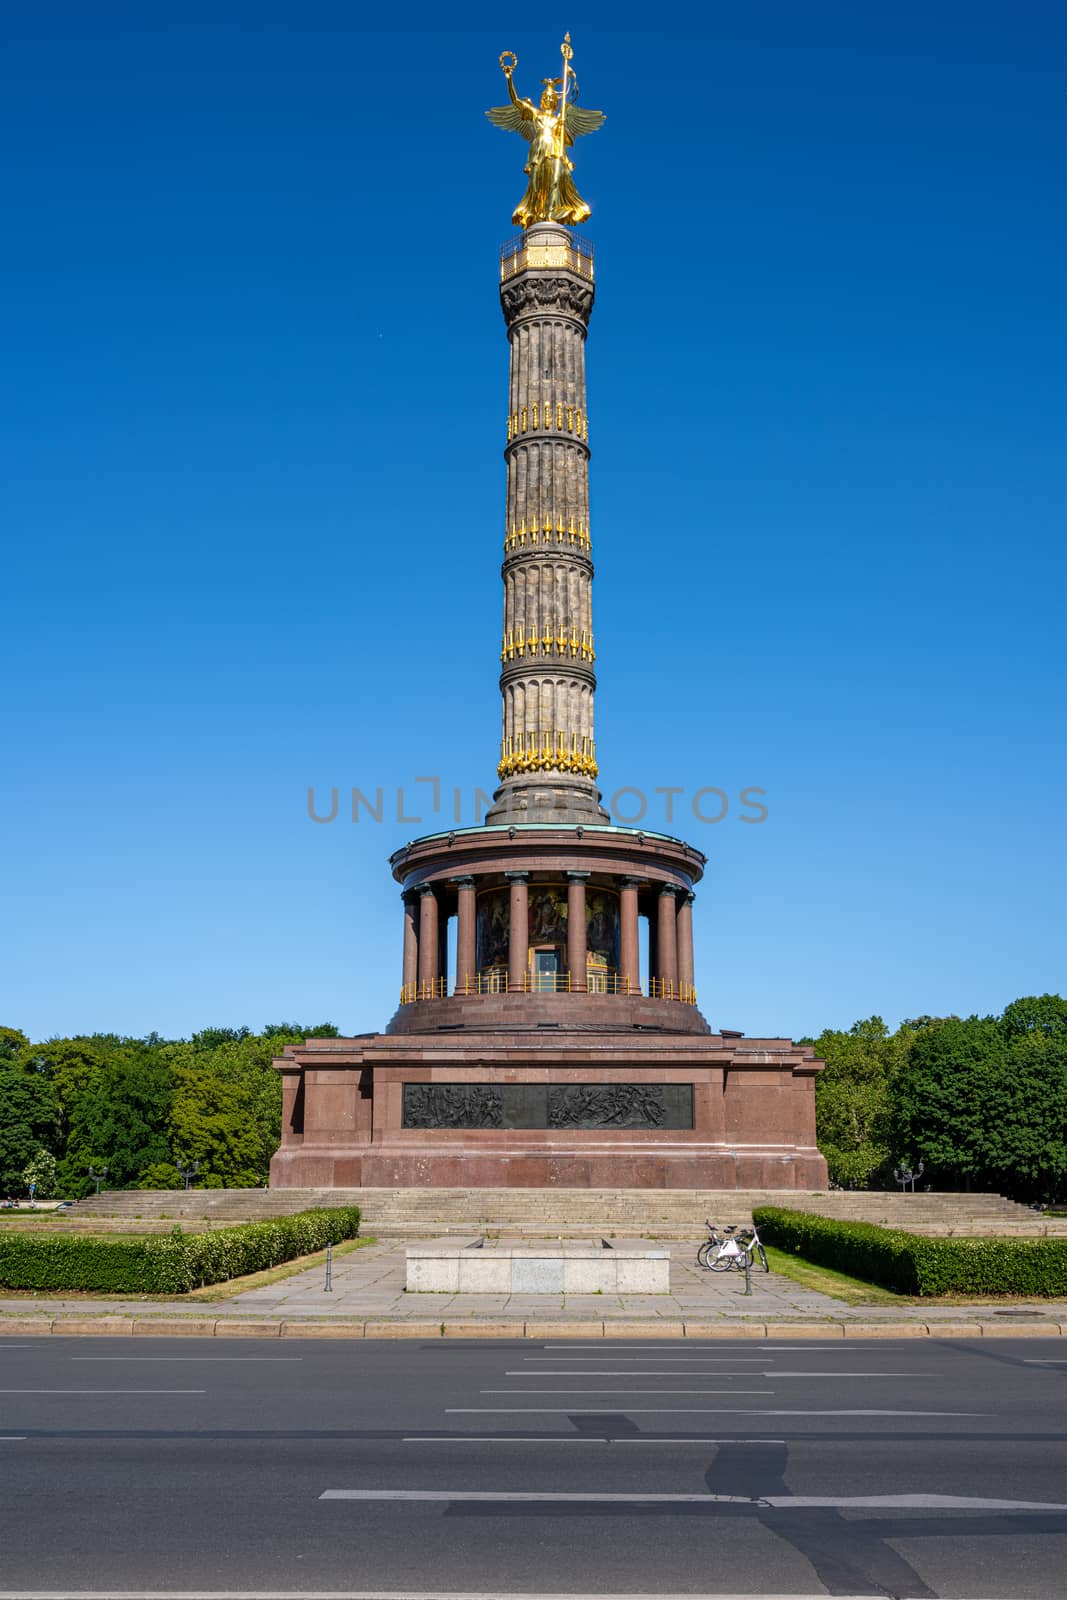 The Victory Column in the Tiergarten in Berlin, Germany